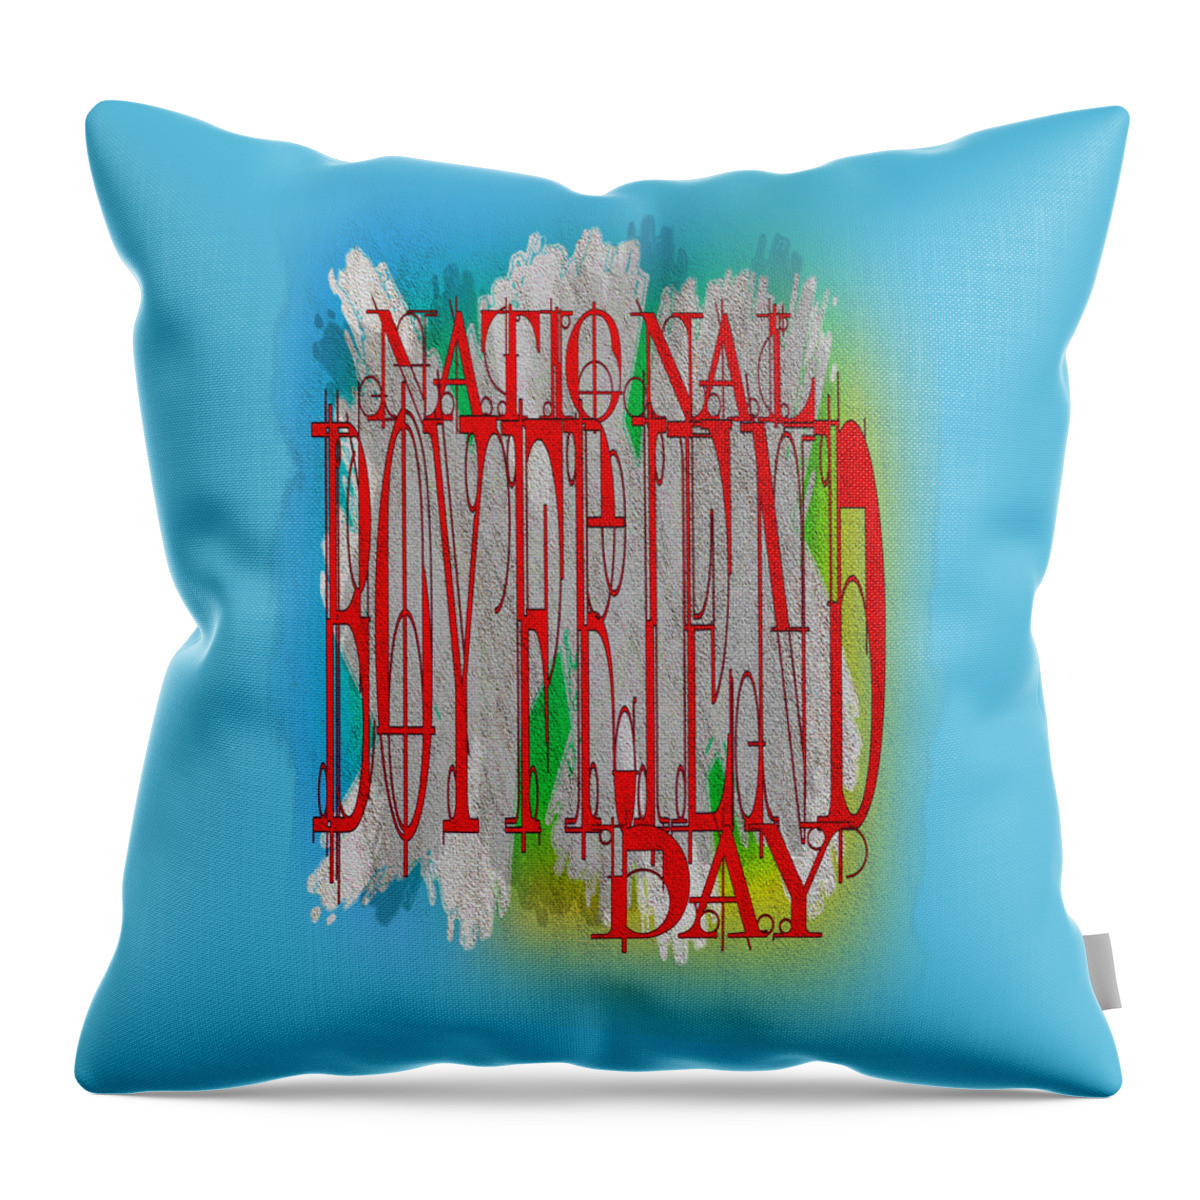 National Boyfriend Day Throw Pillow featuring the digital art National Boyfriend Day is October 3rd by Delynn Addams